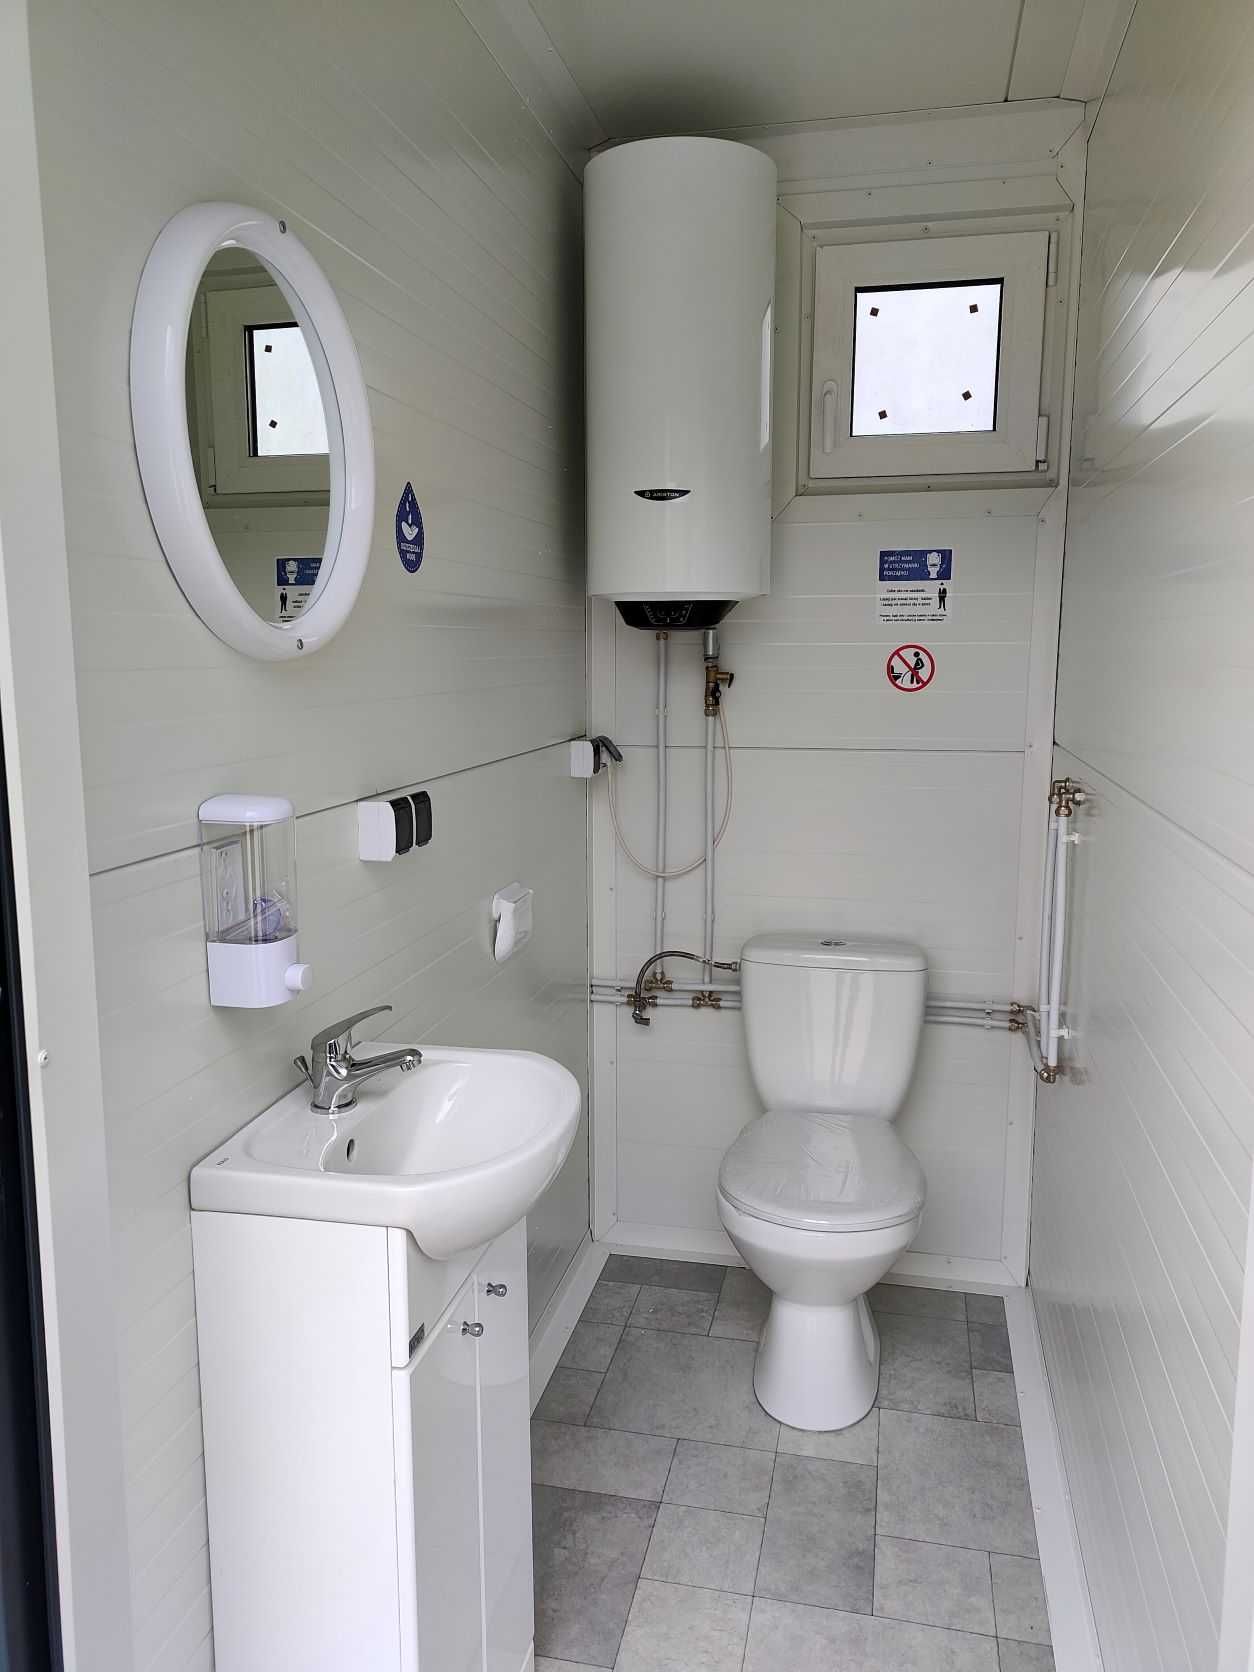 WC toaleta łazienka sanitarny pawilon kontener kibel prysznic natrysk